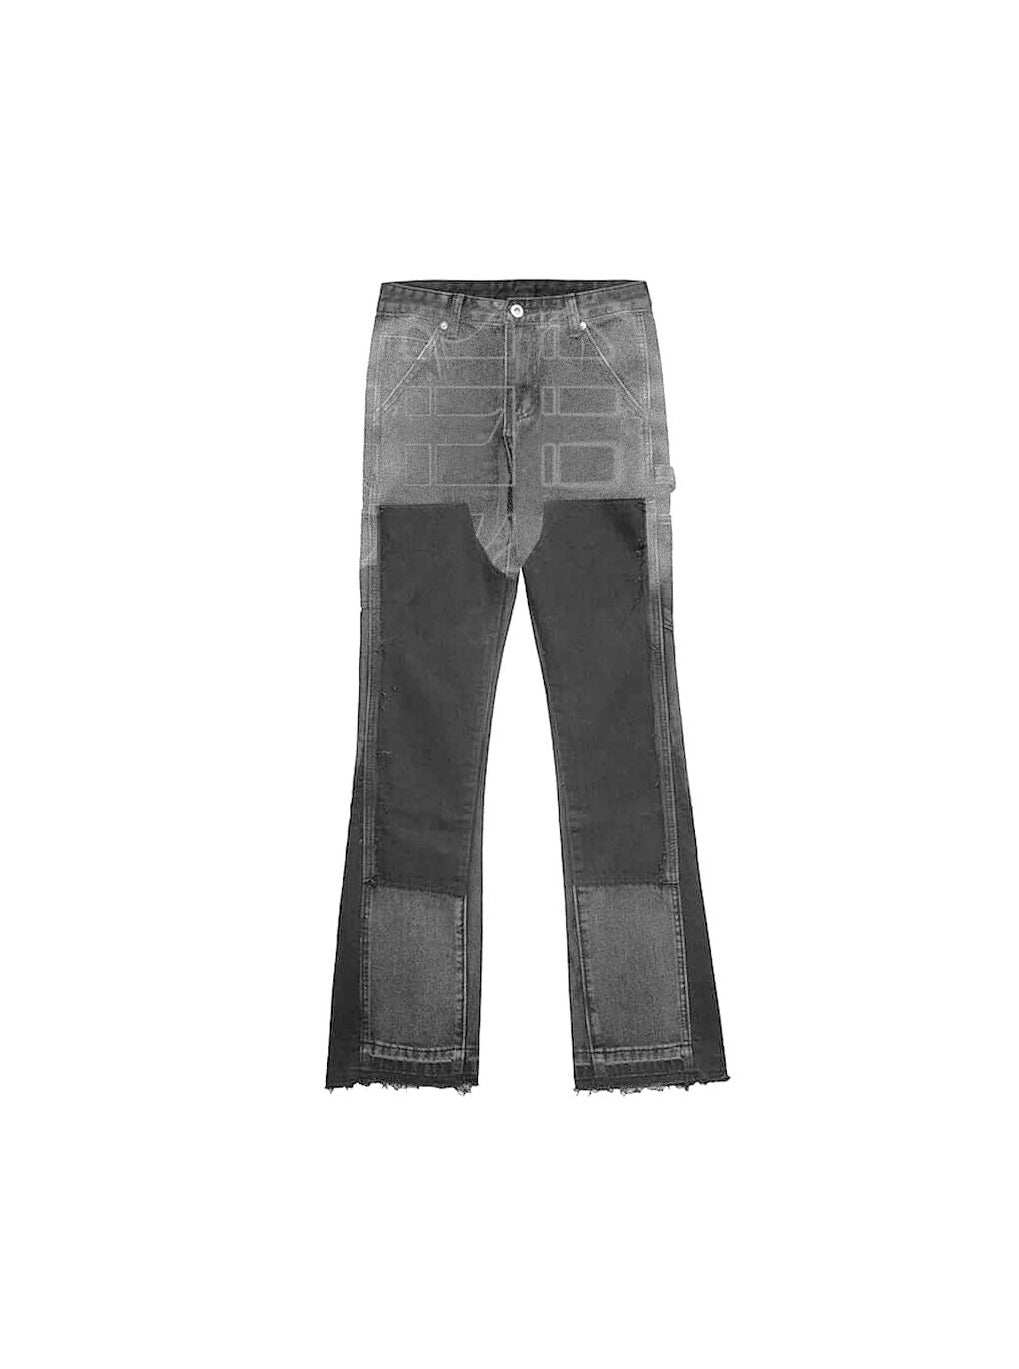 Sole et. Al Metro Flared Carpenter Denim Jeans : Grey